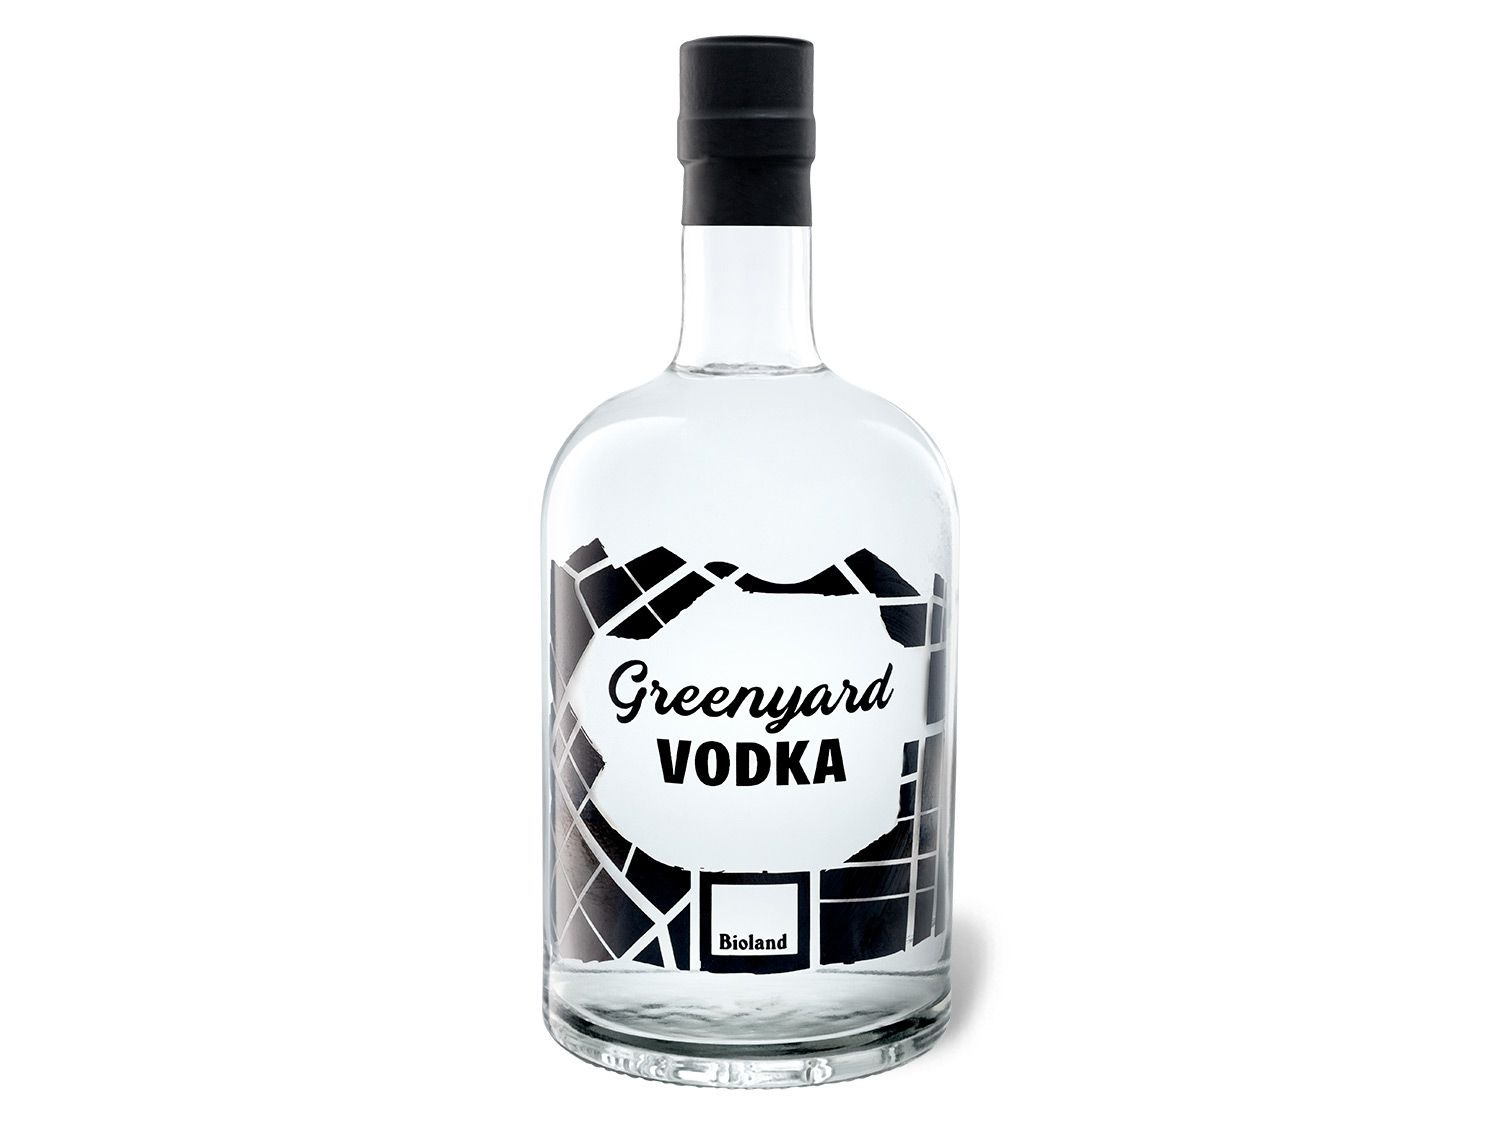 BIO Greenyard Vol kaufen LIDL 40% | Vodka online